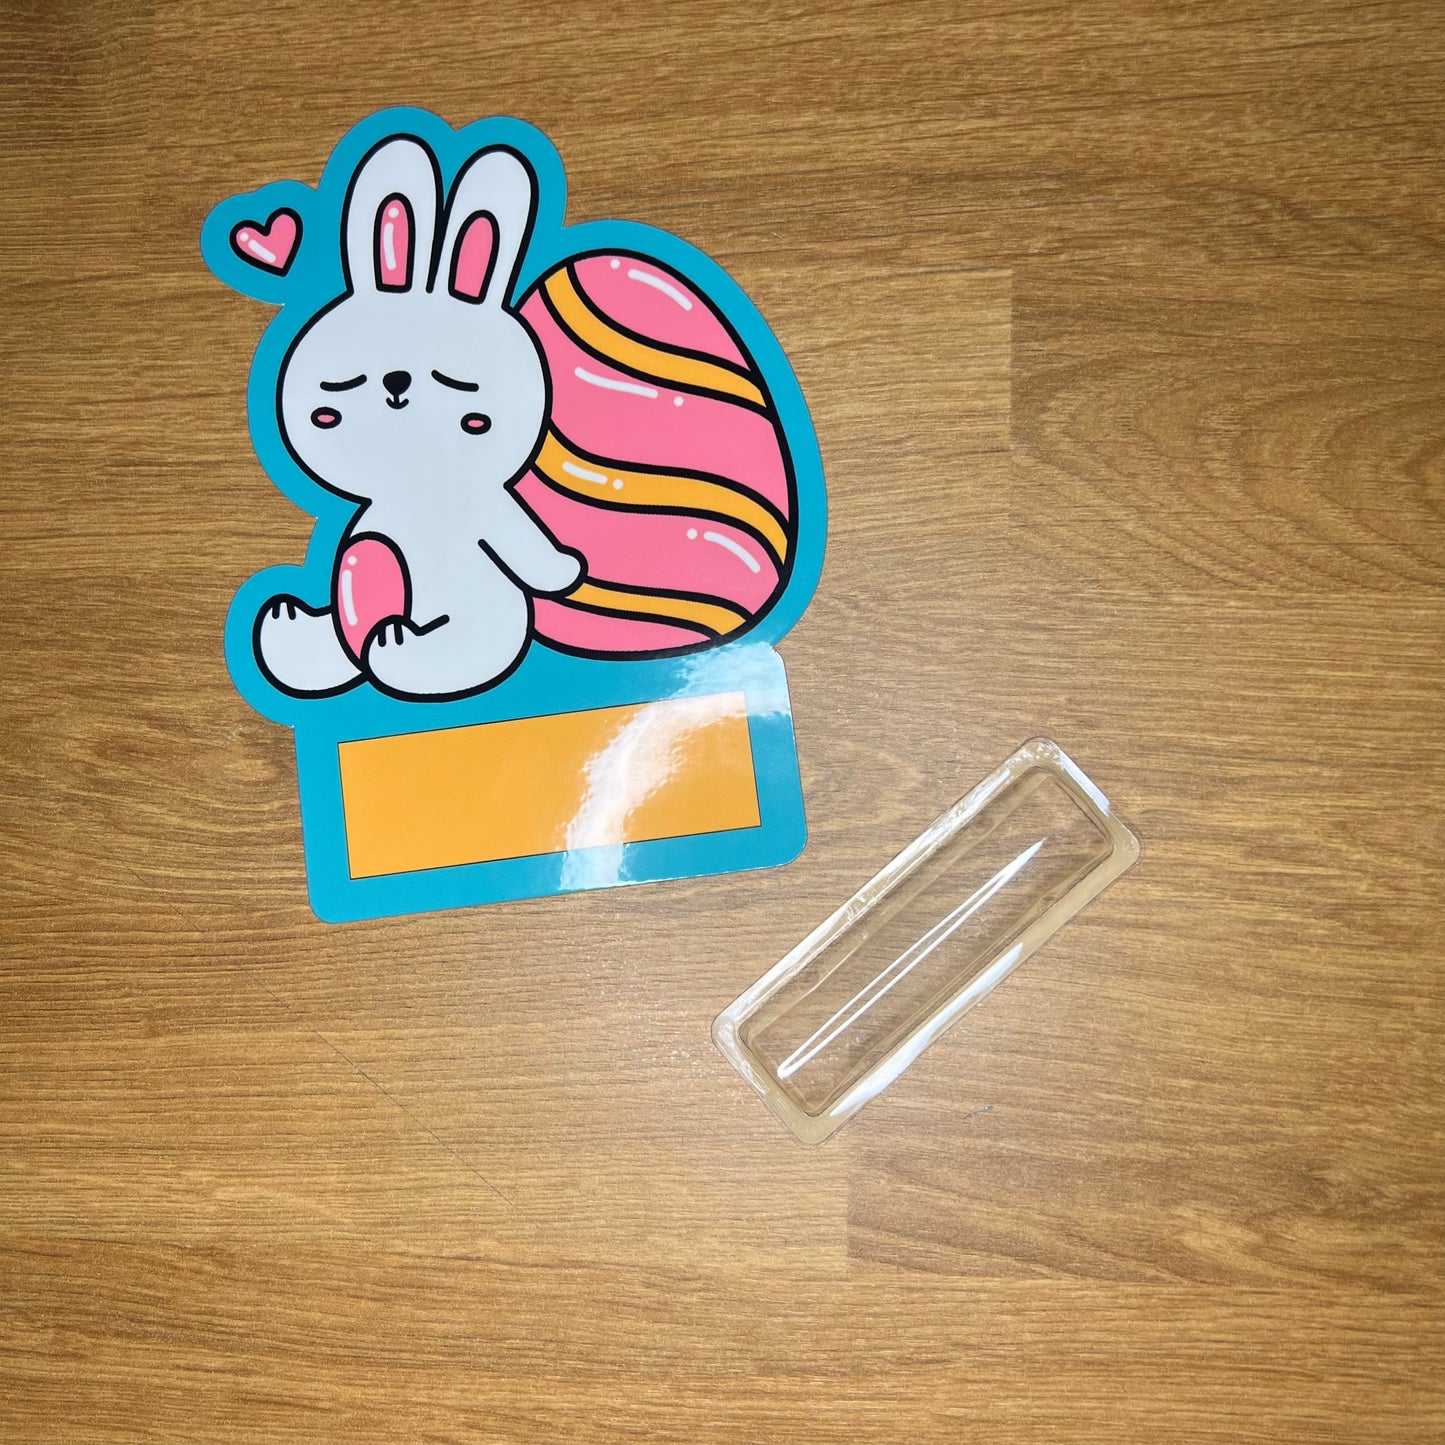 Easter Bunny Money Gift Card (money holder)